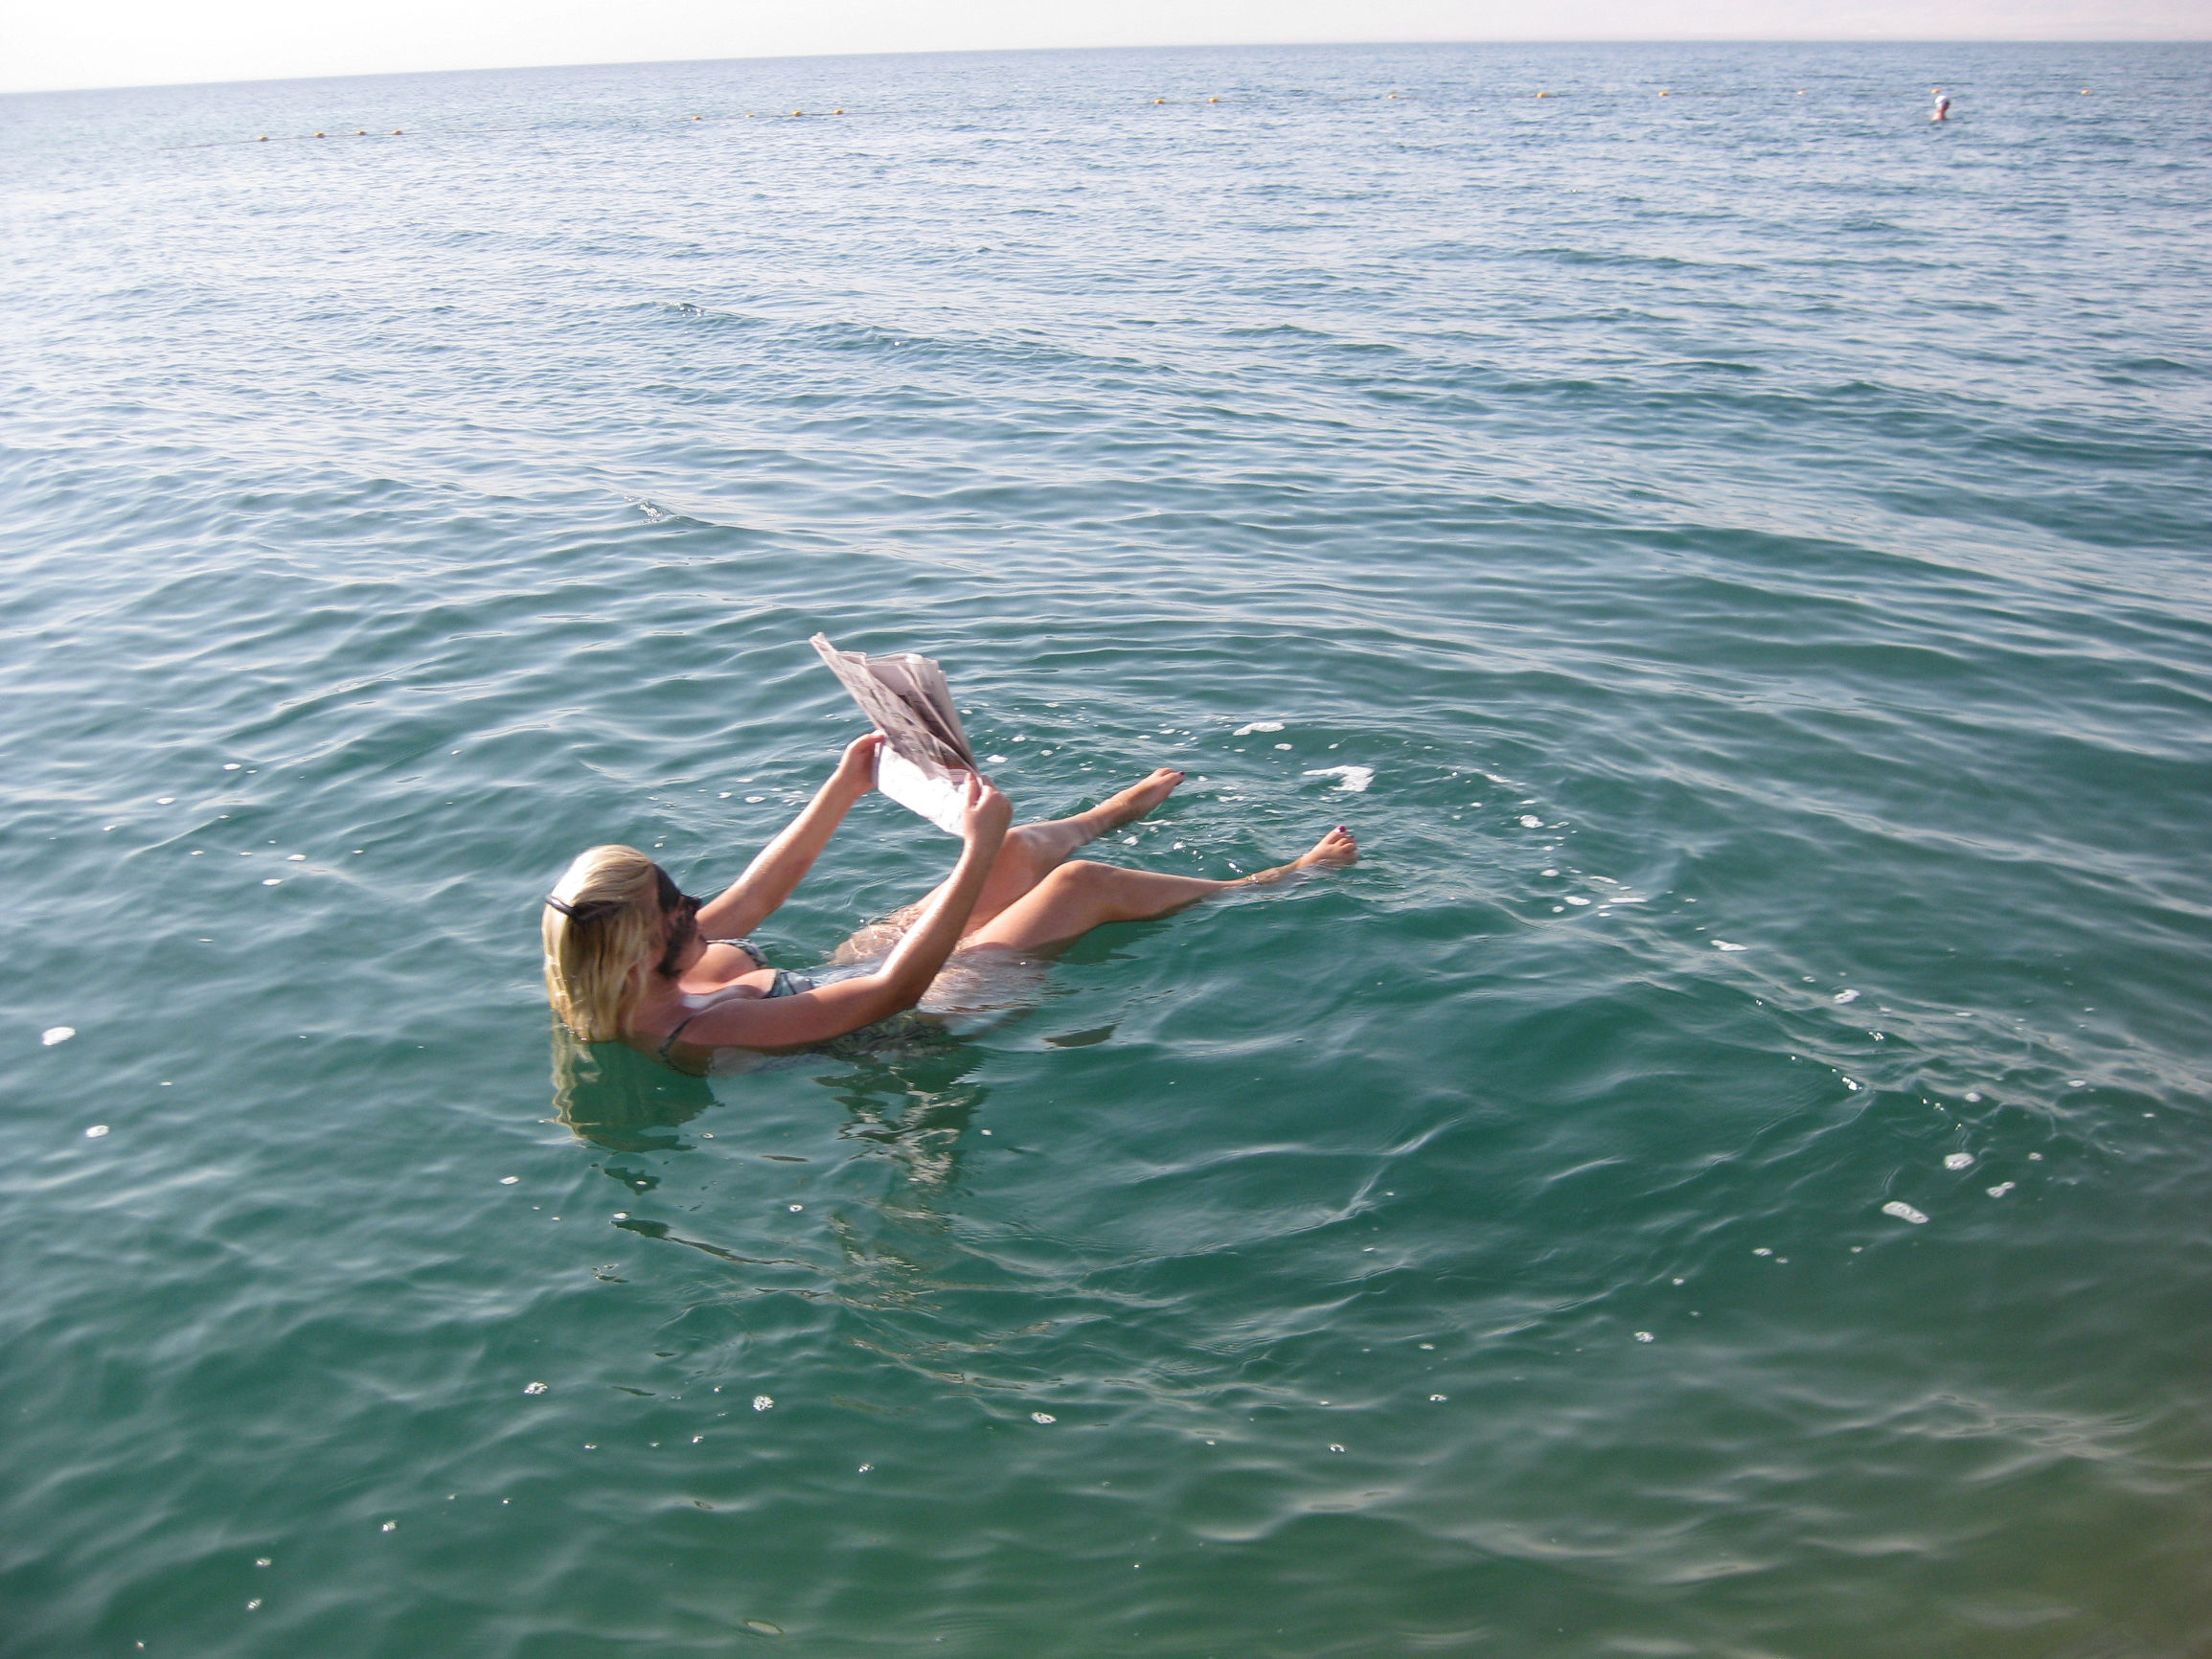 死海是一个盐含量惊人的湖泊,在这里不管你有多重,多有力,都只会浮在